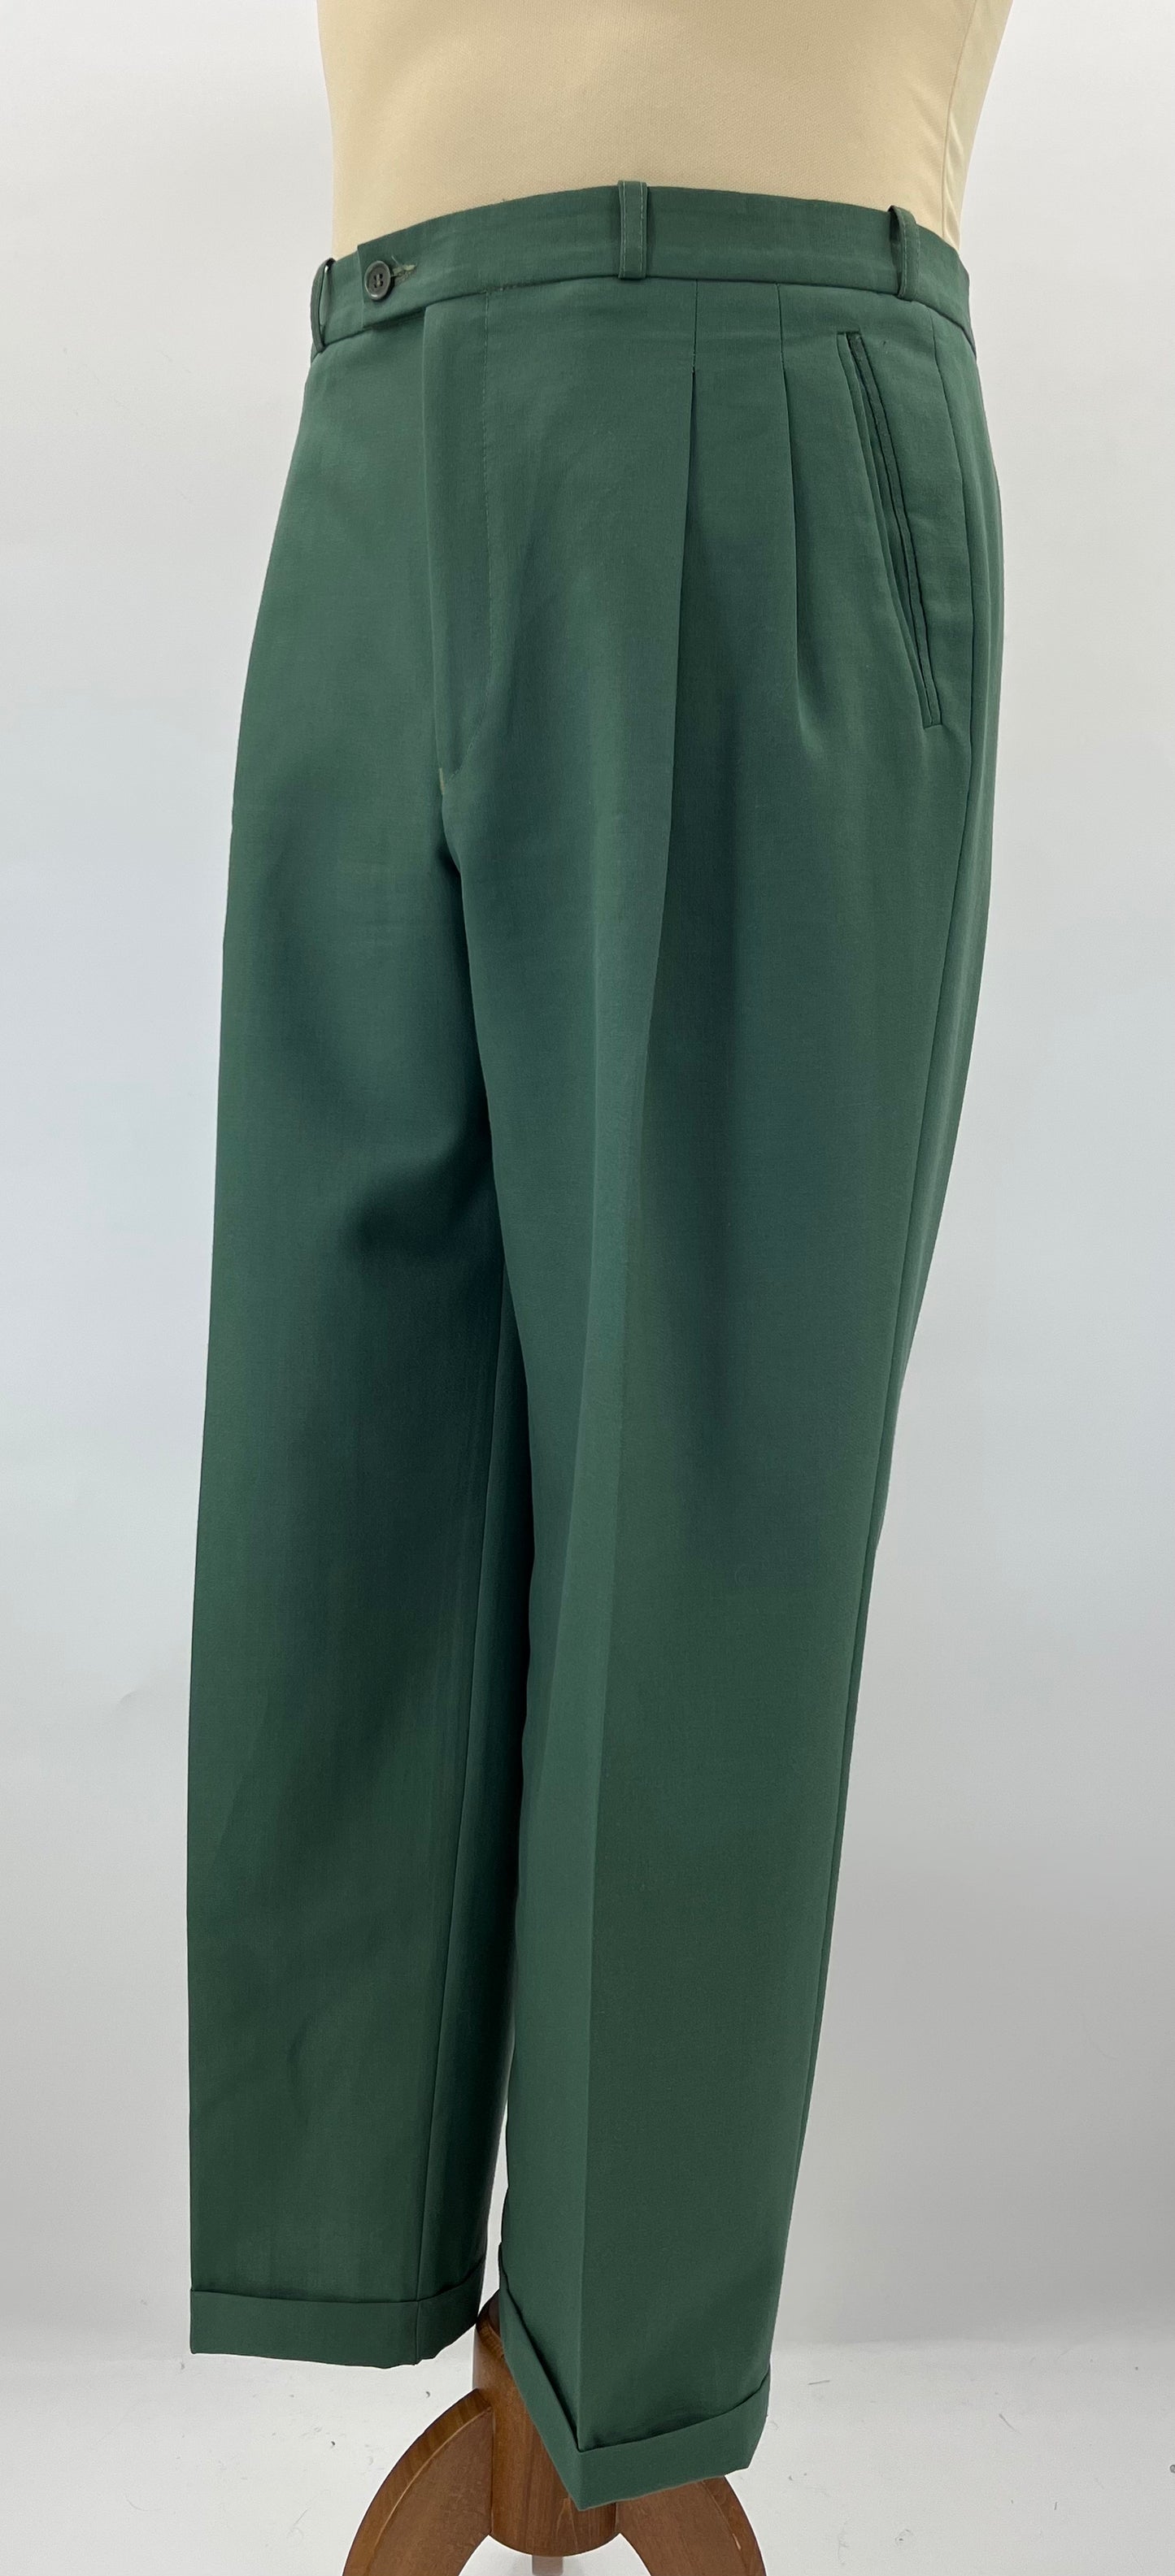 Daxon, vihreät miesten housut, 70-luku, vyöt.ymp. 96cm